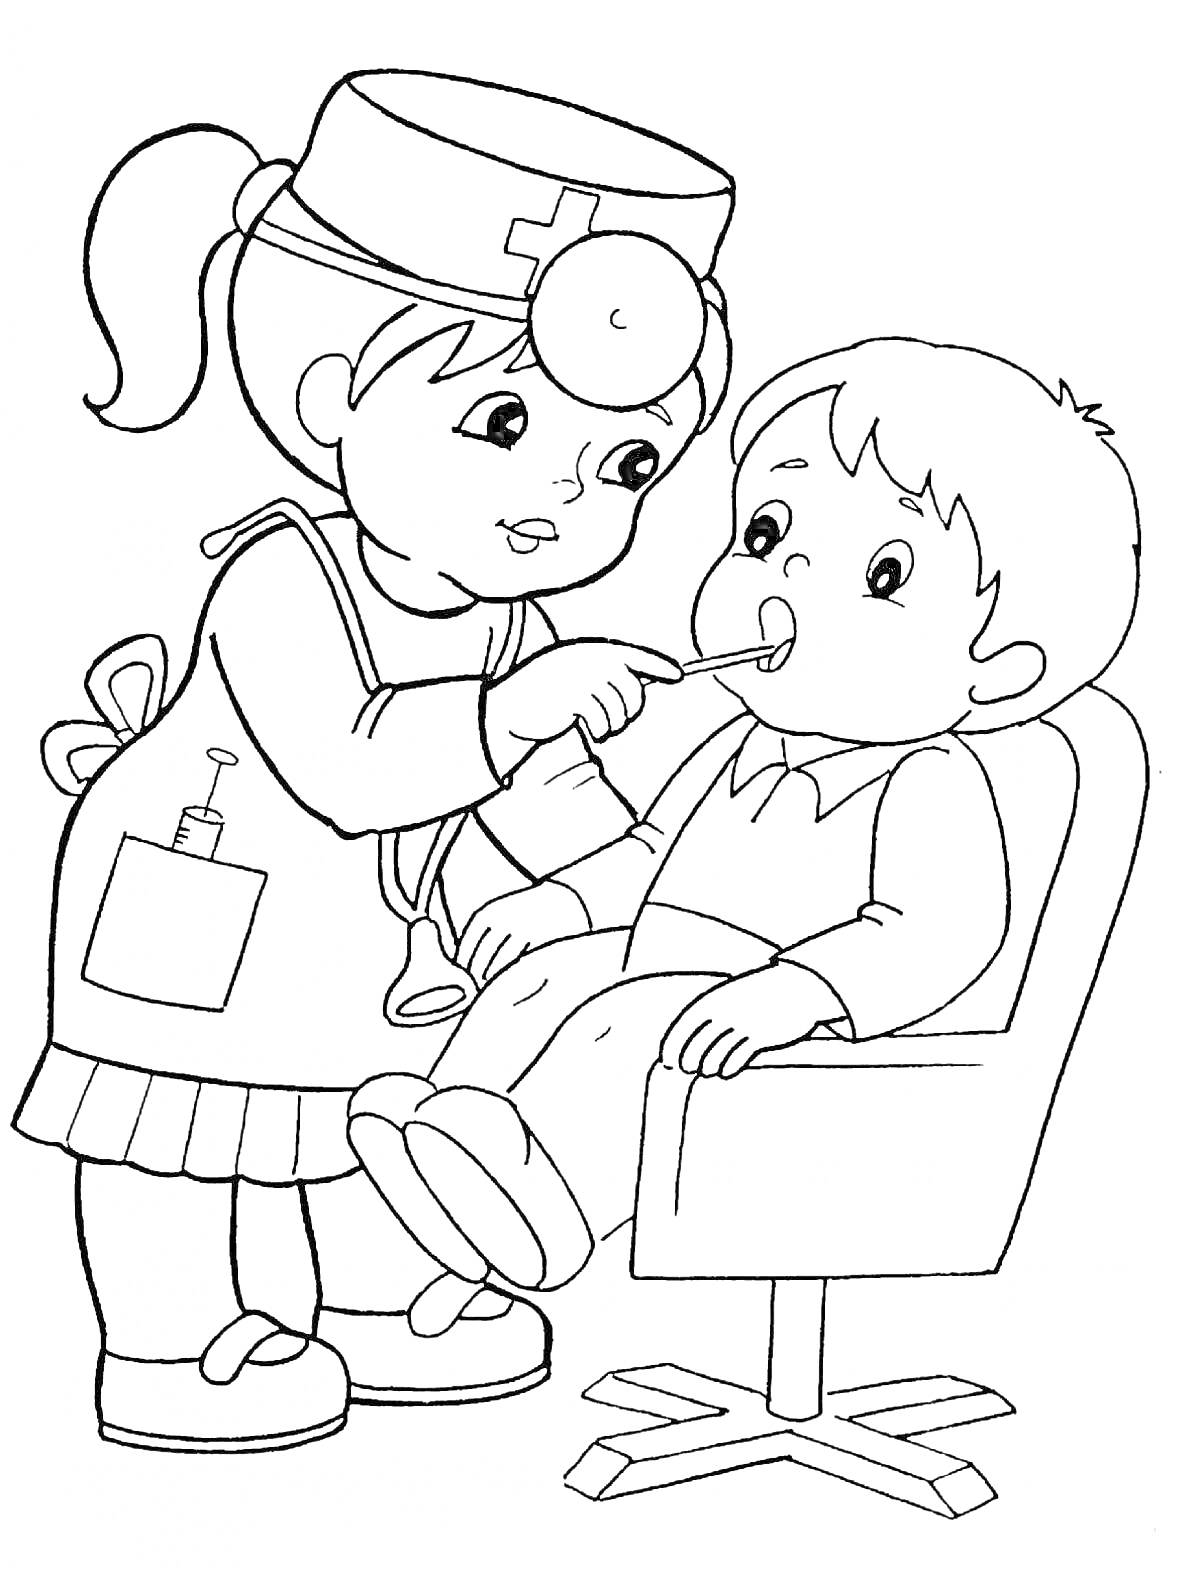 Врач осматривает ребенка, сидящего в кресле, используя палочку для проверки горла